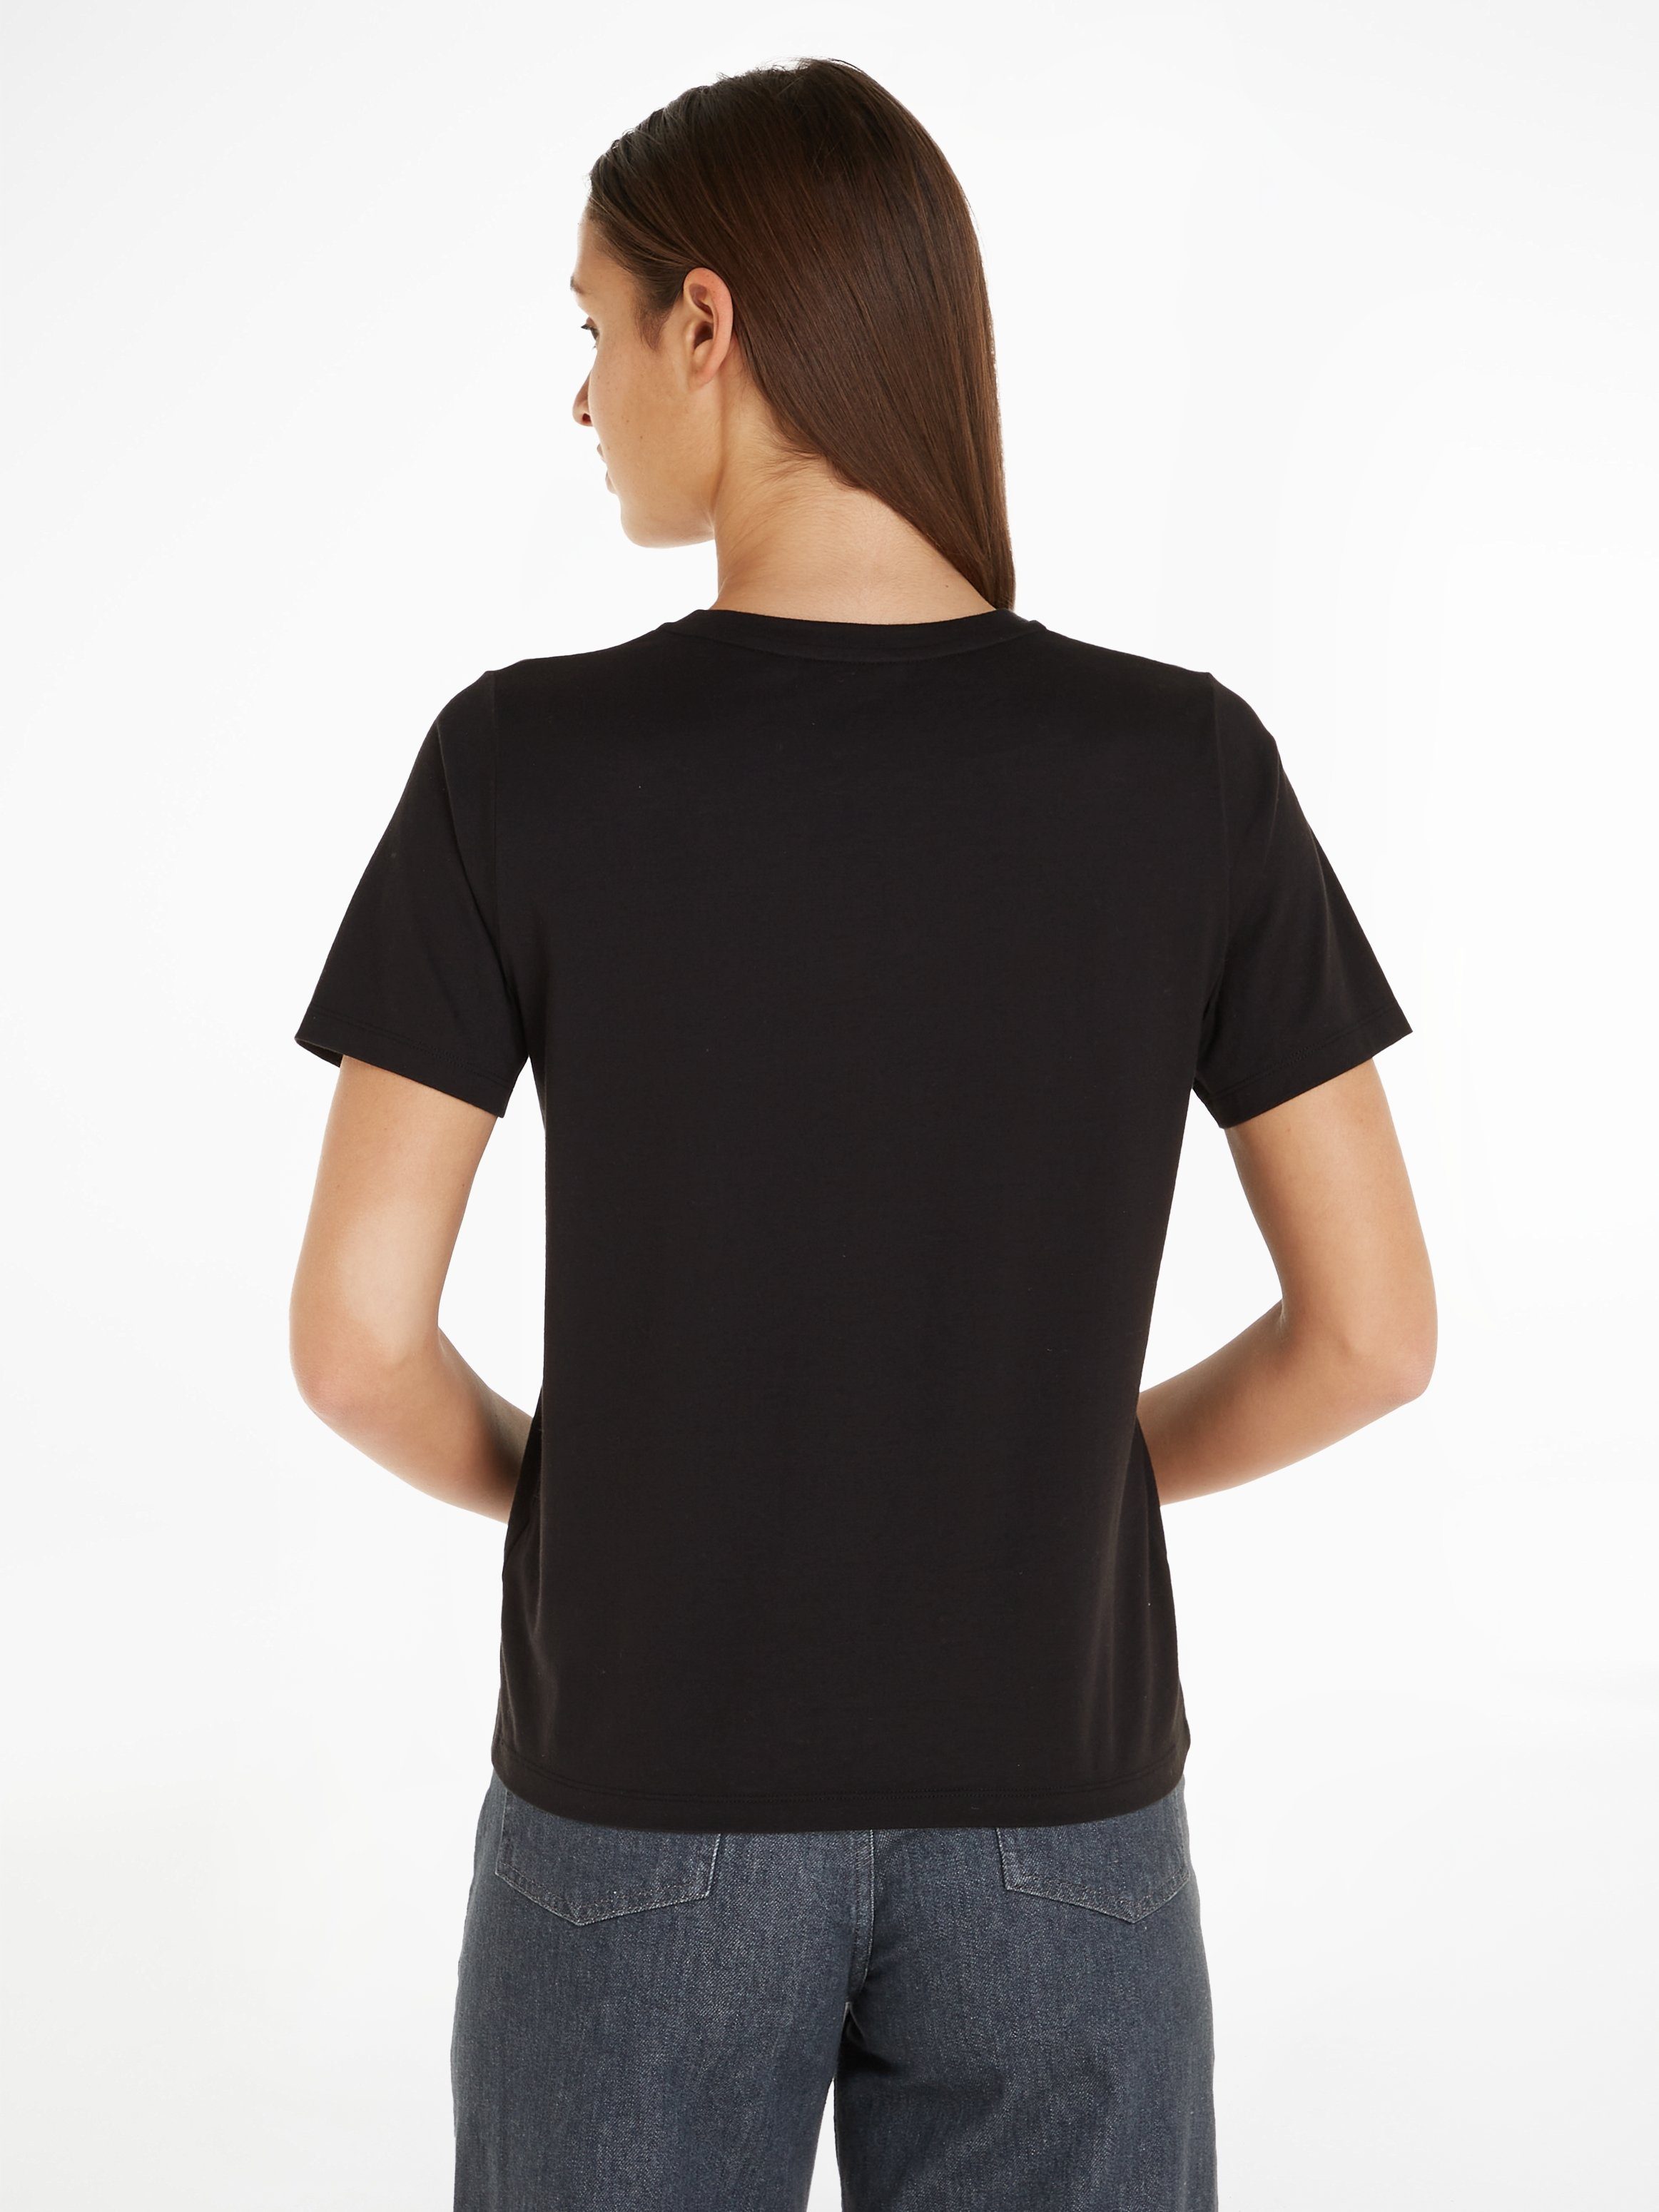 Calvin Klein T-Shirt MICRO reiner Baumwolle T-SHIRT Ck-Black aus LOGO